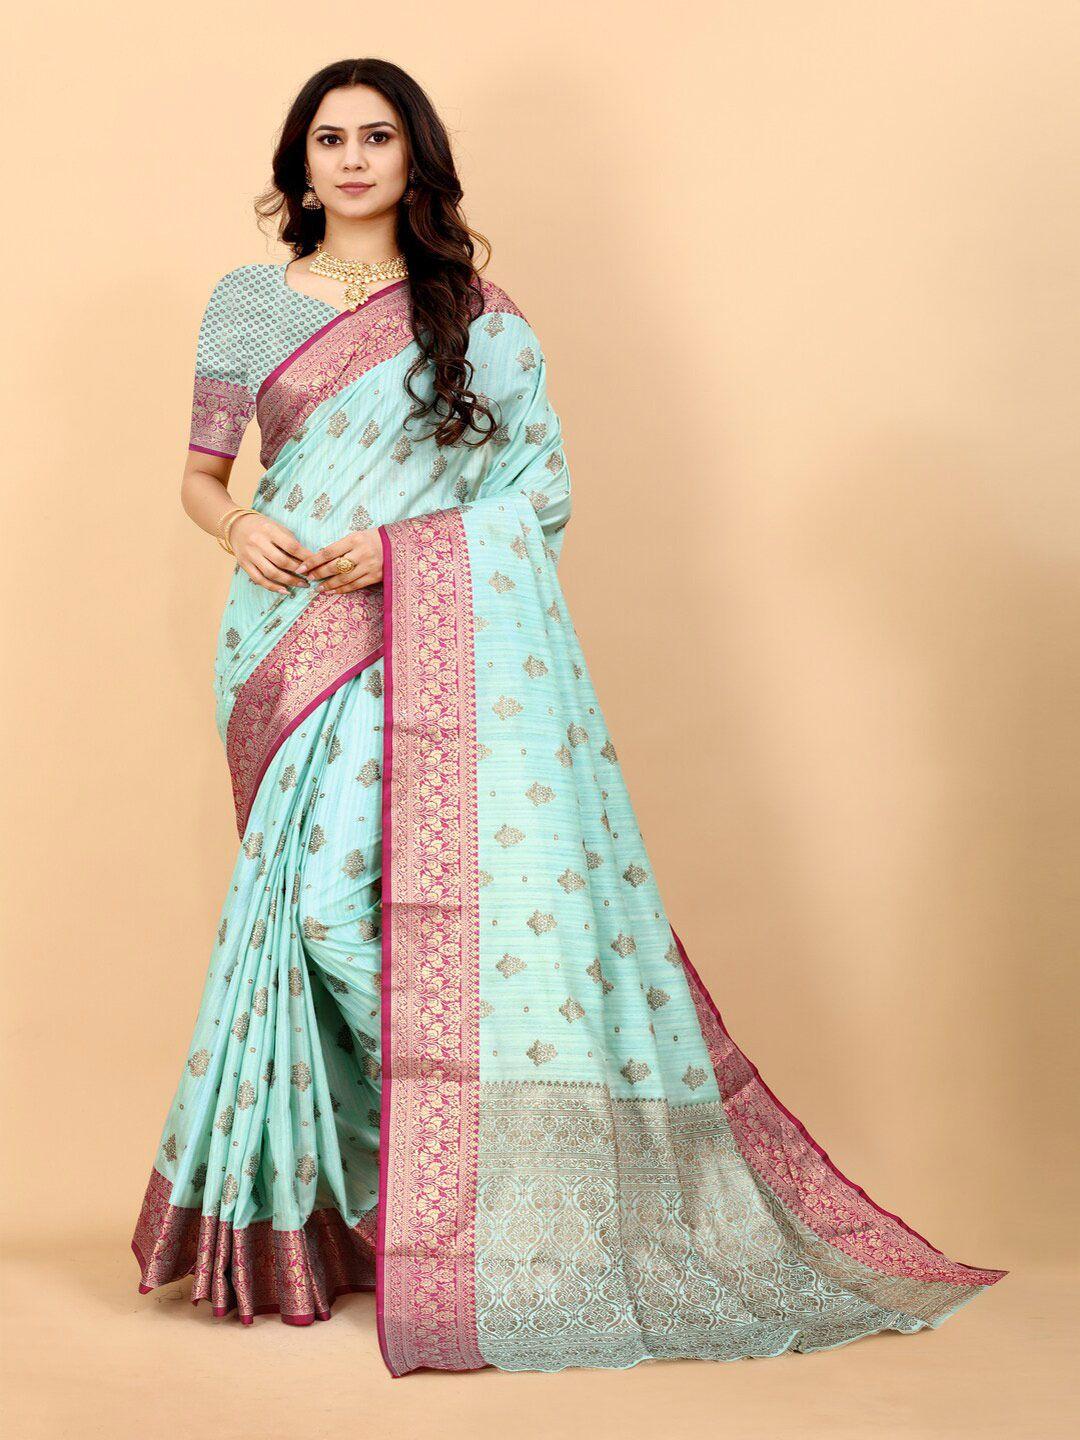 hirapara enterprice woven design zari silk cotton banarasi saree